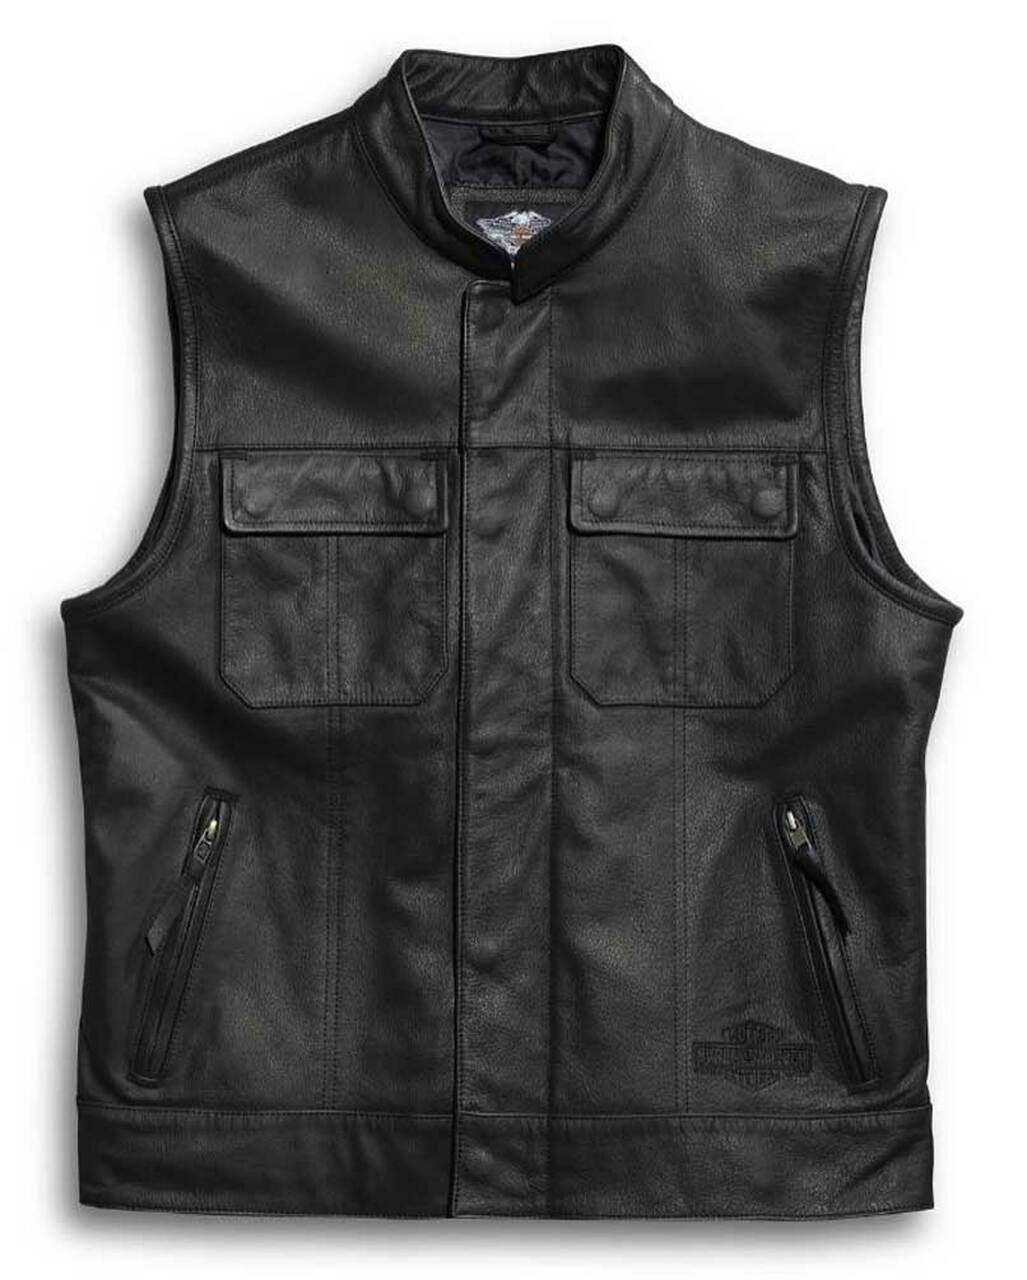 Harley-Davidson® Men's Leather Vest, Foster Reflective, Black 98090-15VM